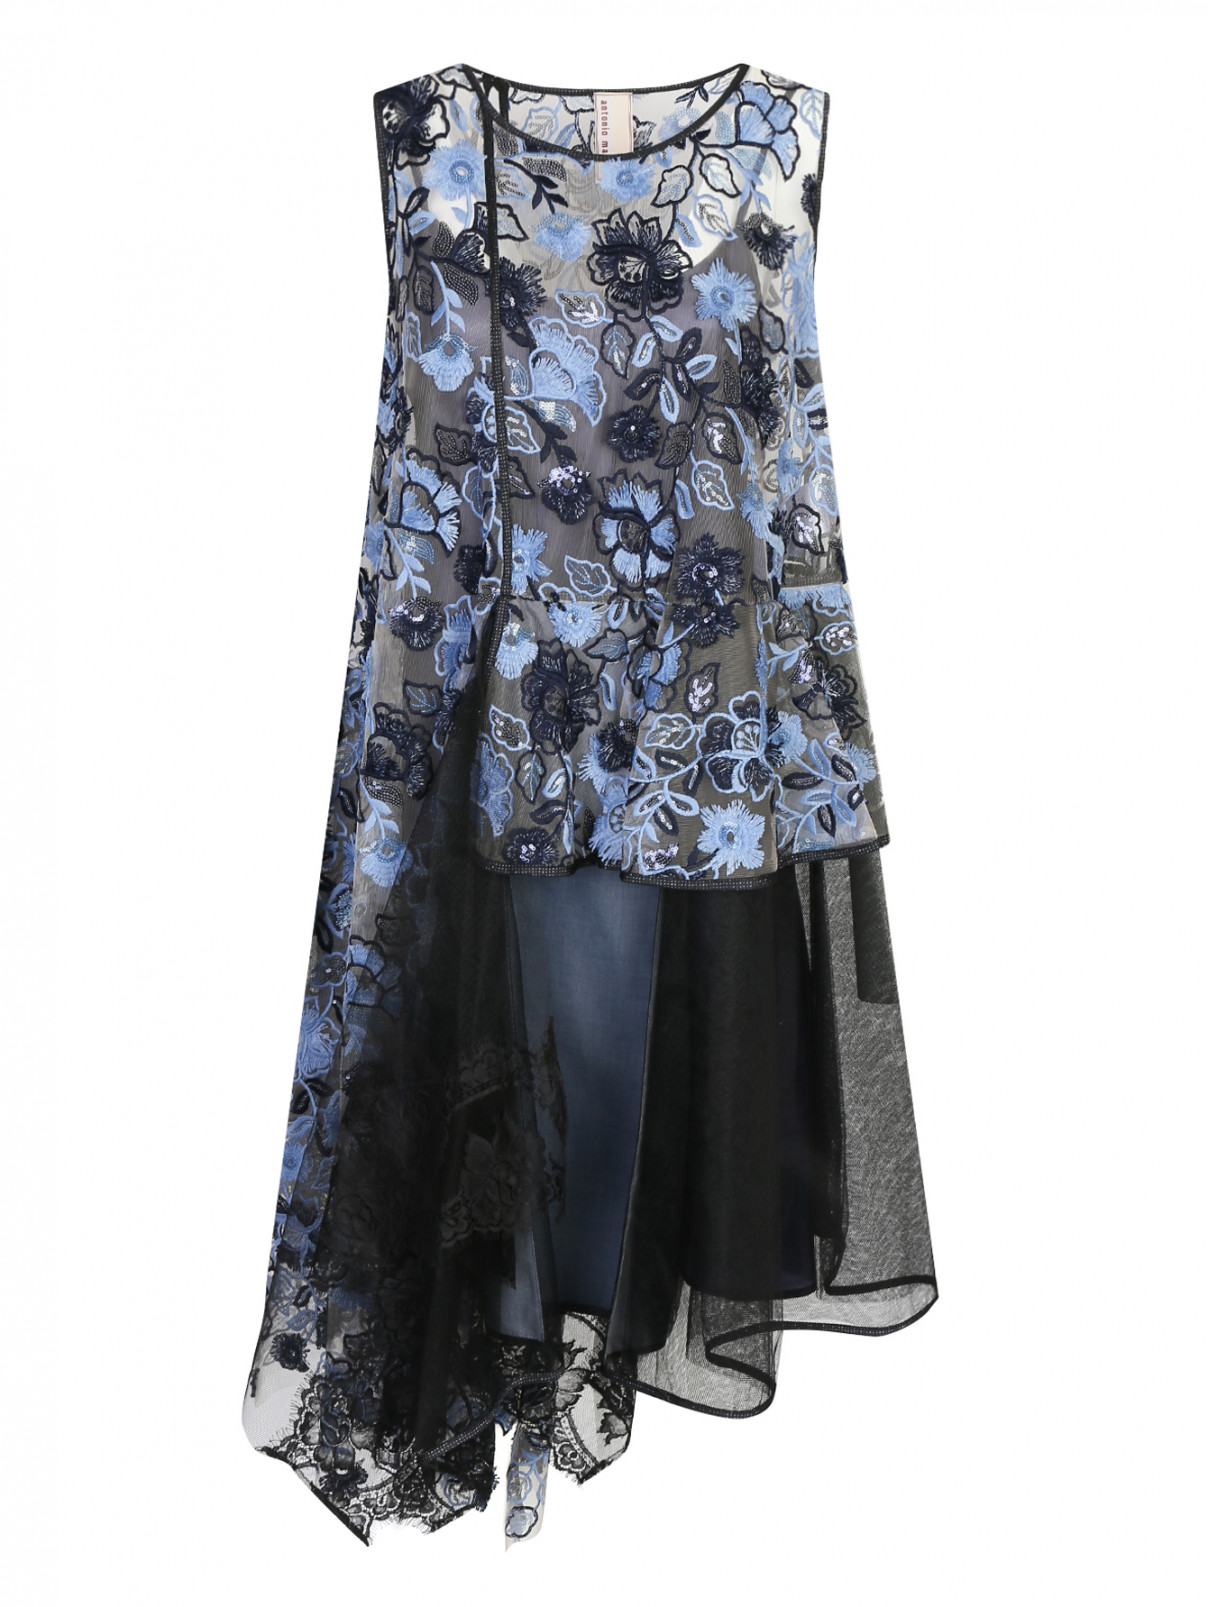 Платье без рукавов с цветочной аппликацией Antonio Marras  –  Общий вид  – Цвет:  Синий